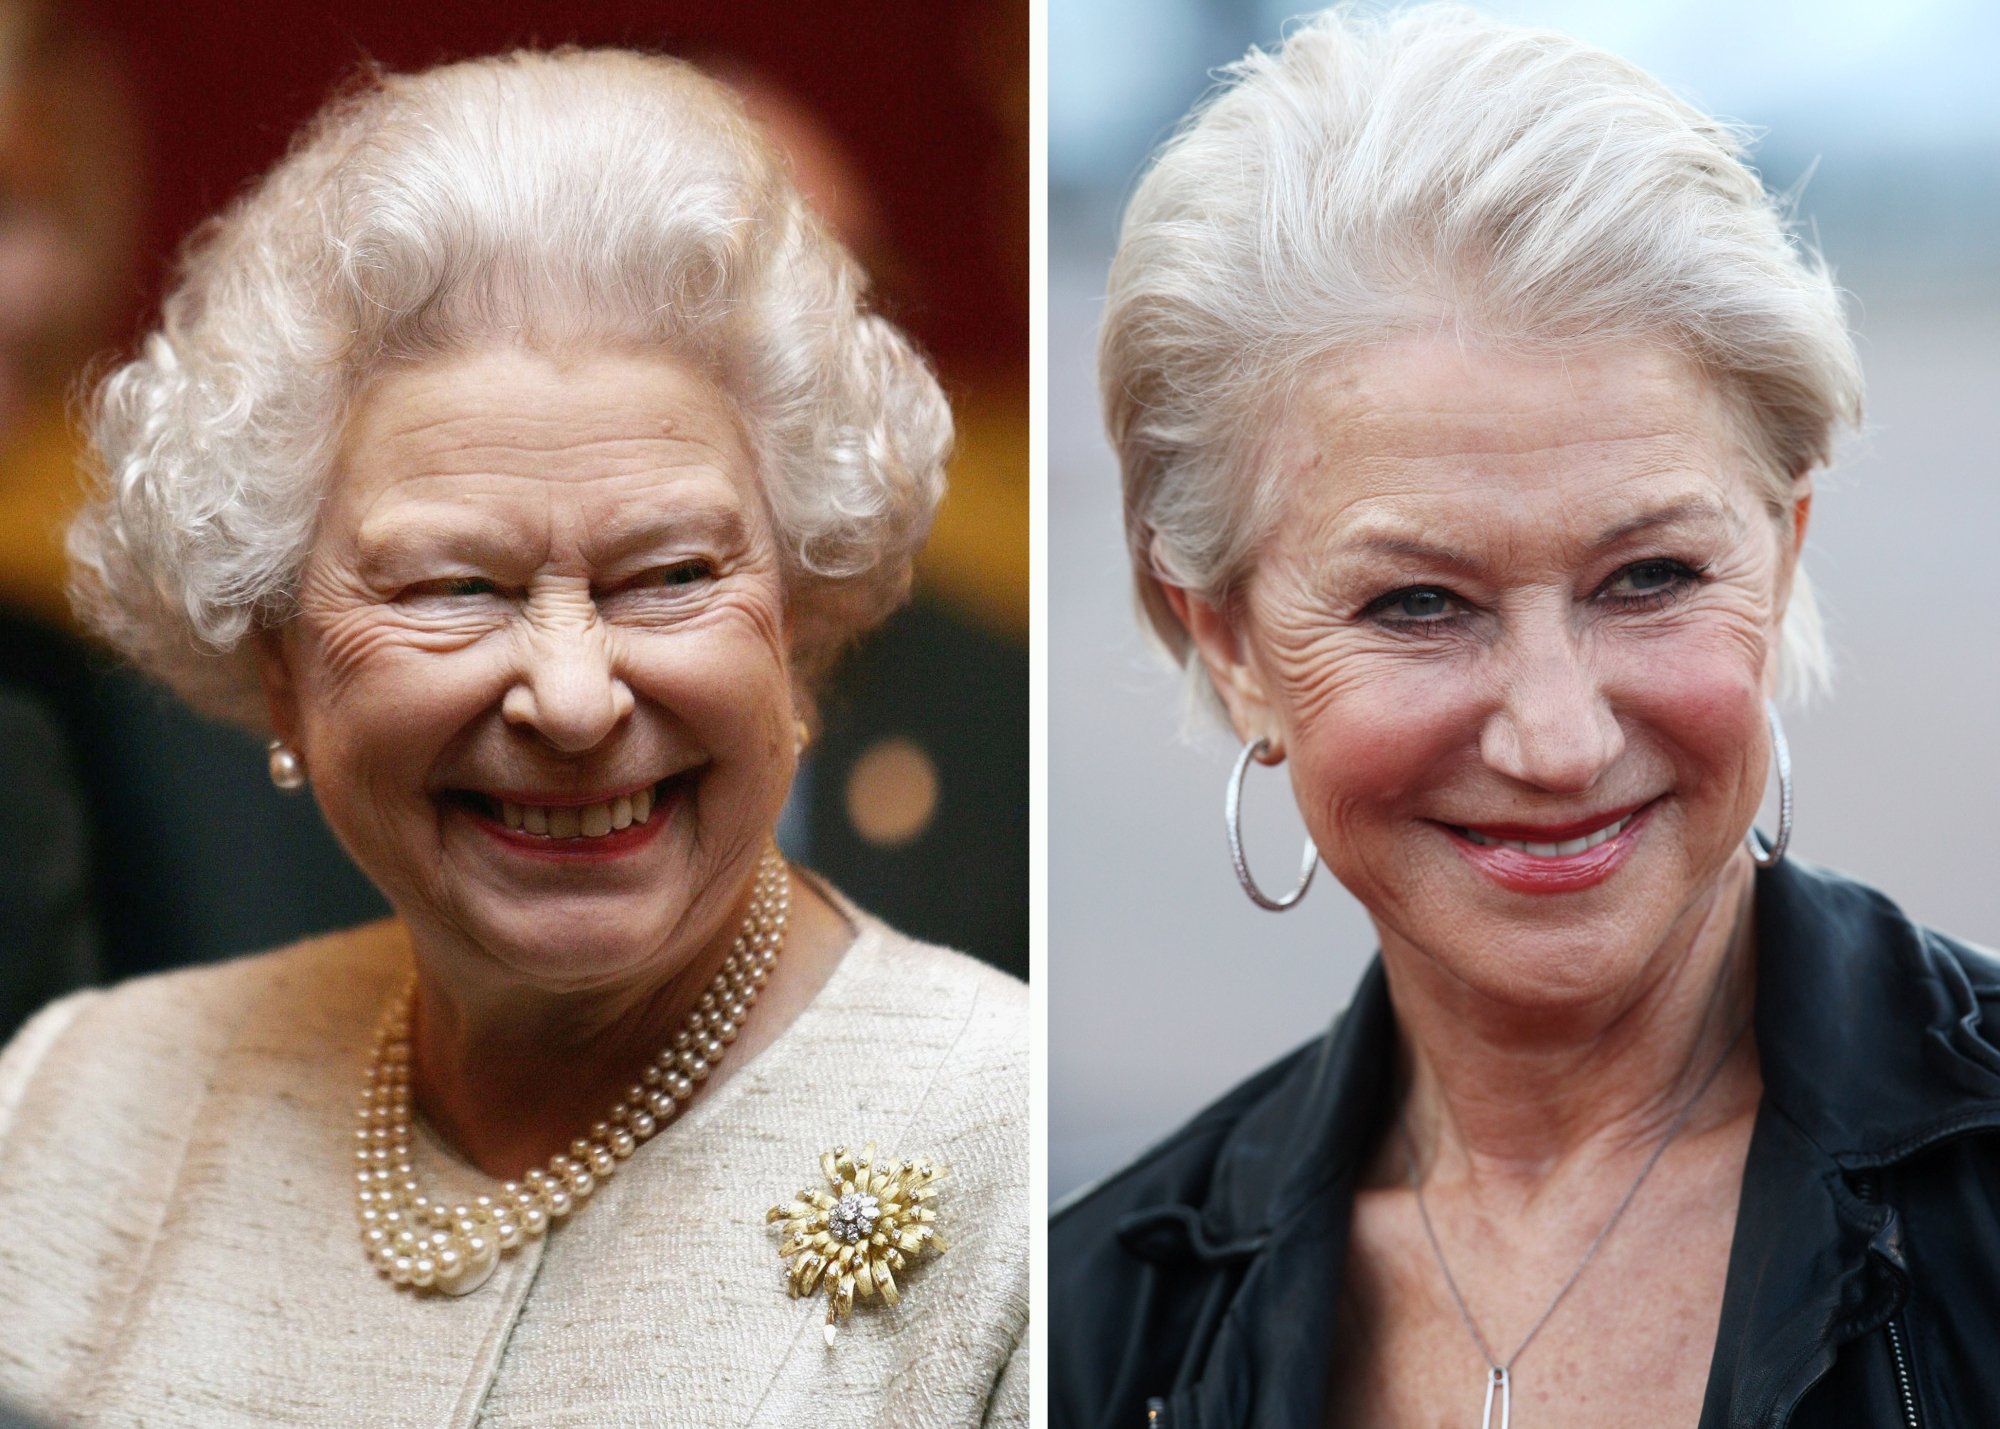 Queen Elizabeth II and 'The Queen' actor Dame Helen Mirren smiling in a composite image